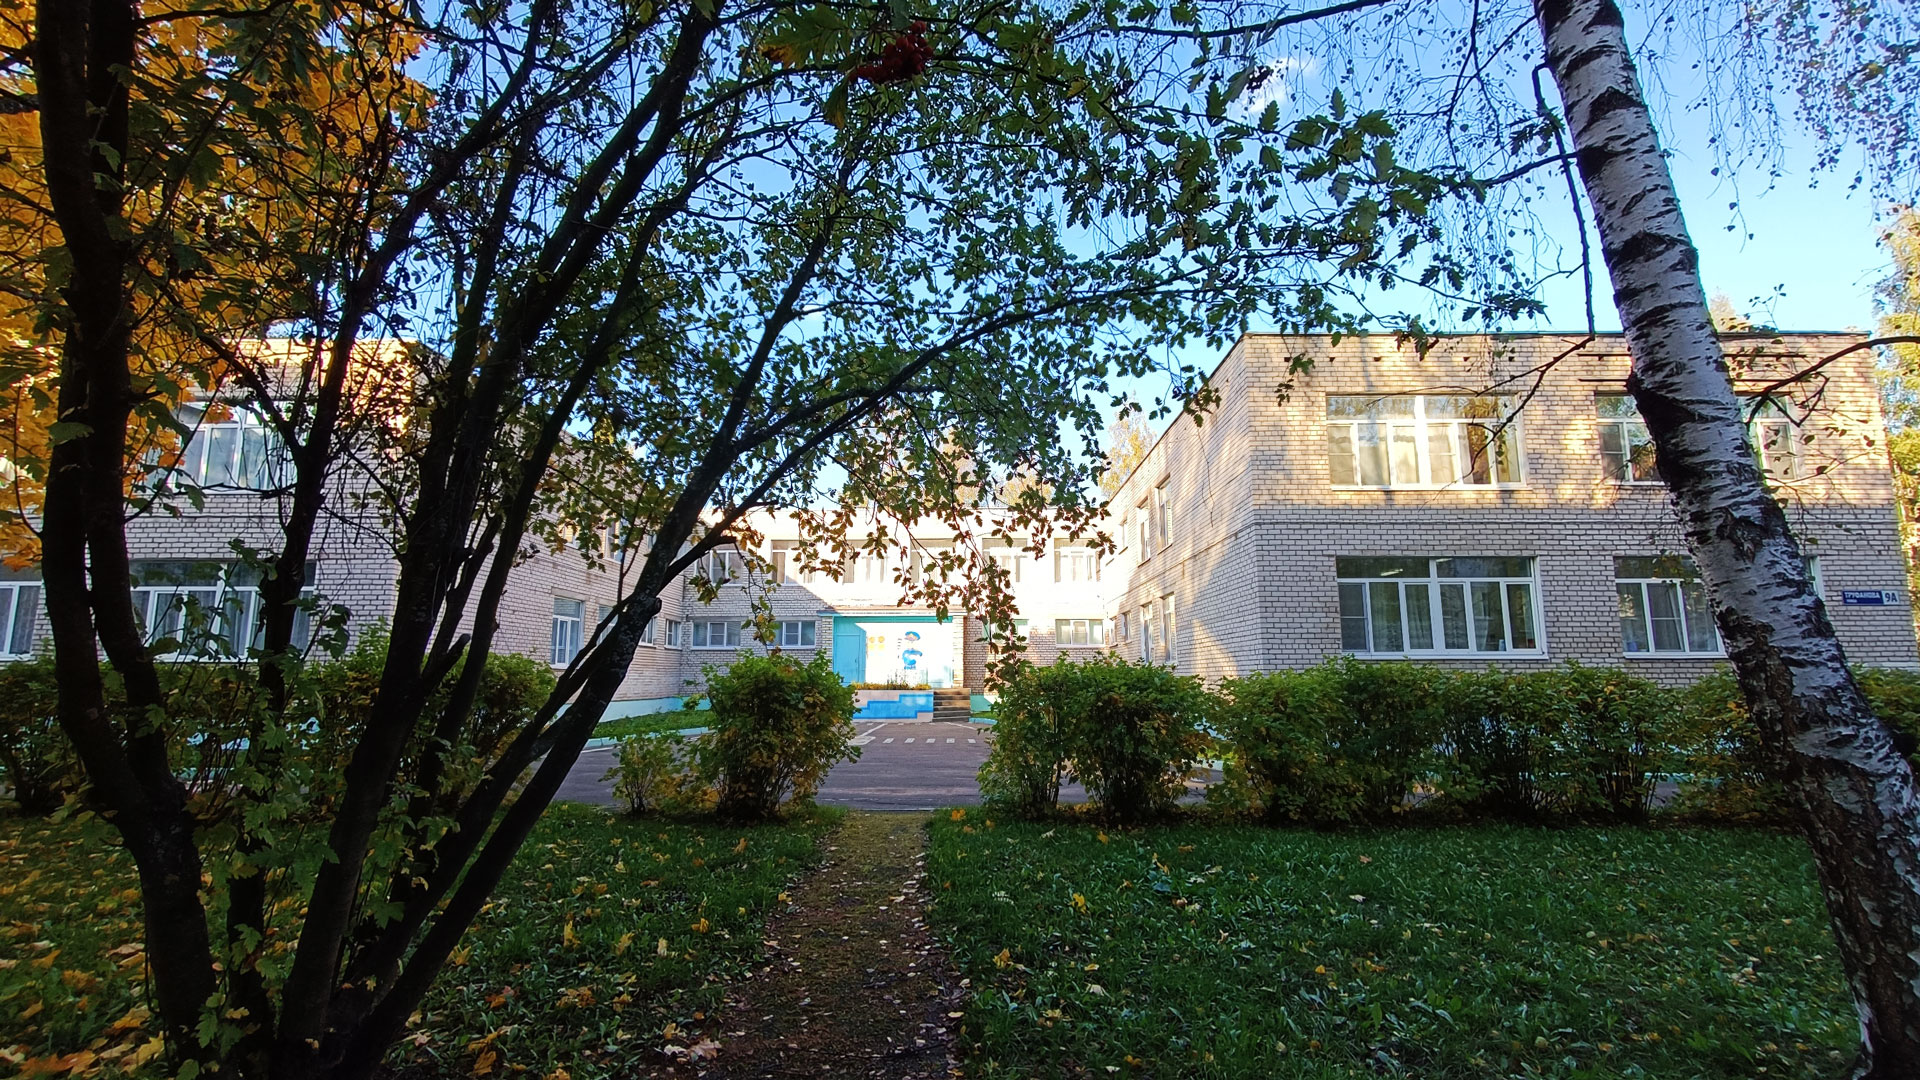 Детский сад 149 Ярославль: панорамный вид здания д/с.